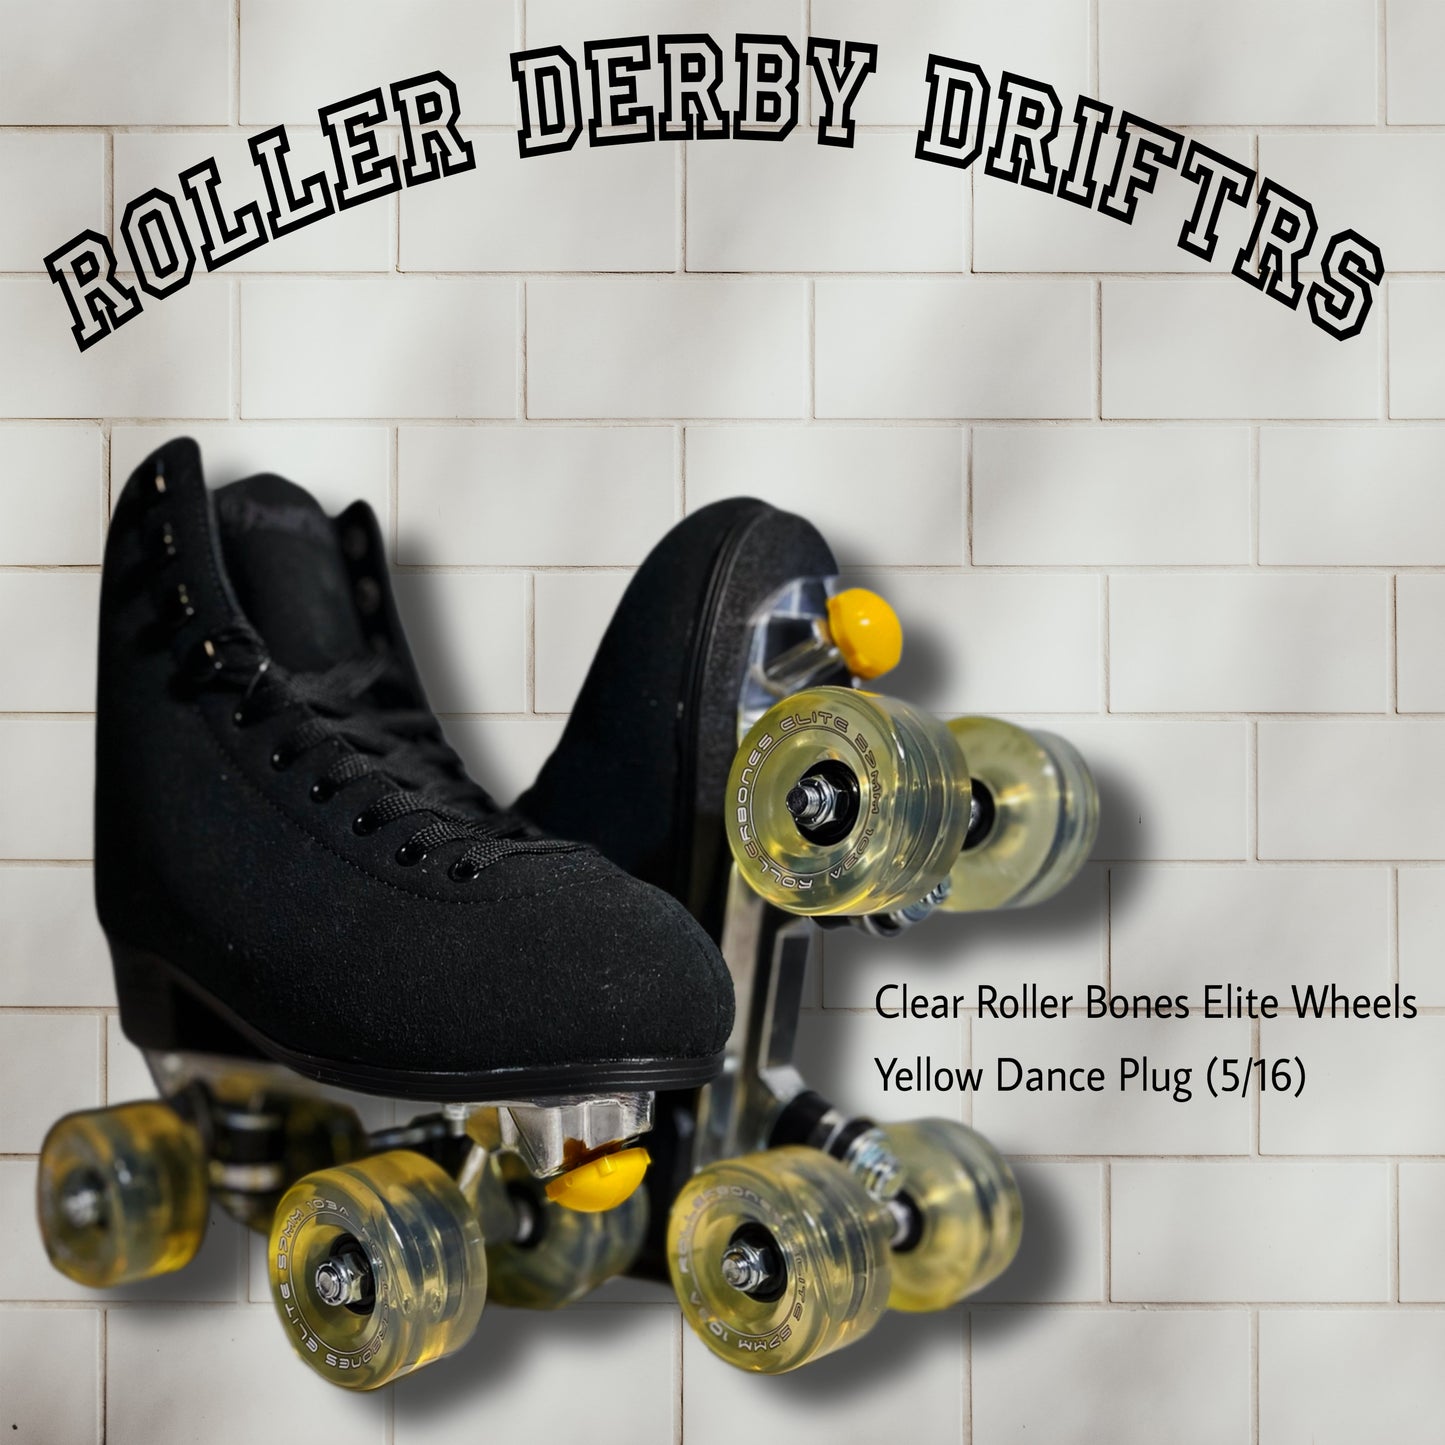 Roller Derby Driftr w/ Roller Bones Elite Wheels